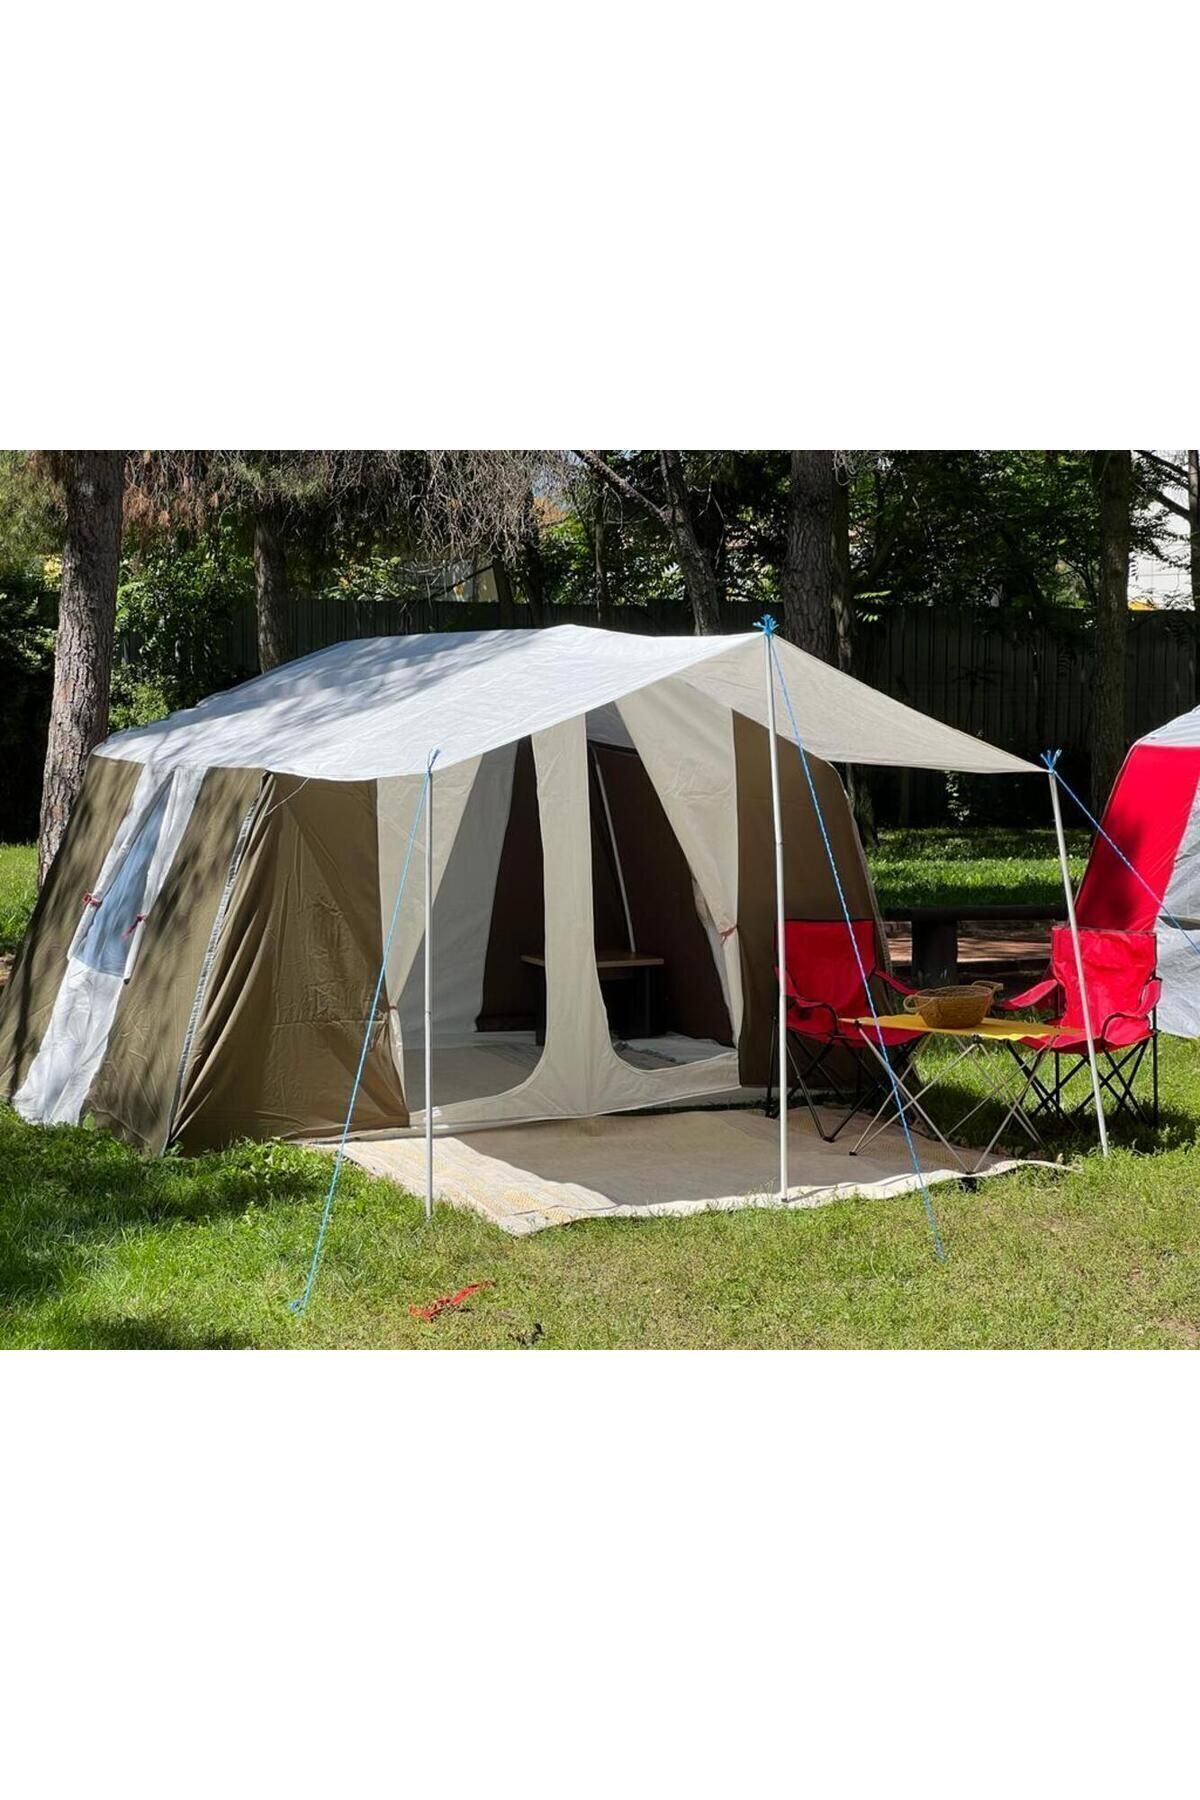 yamaç çadır Mutlaka Açıklamayı Okuyun ! A Kalite Aile Tipi Haki Yeşil 2 Kapılı Geniş Ferah Kamp Çadırı